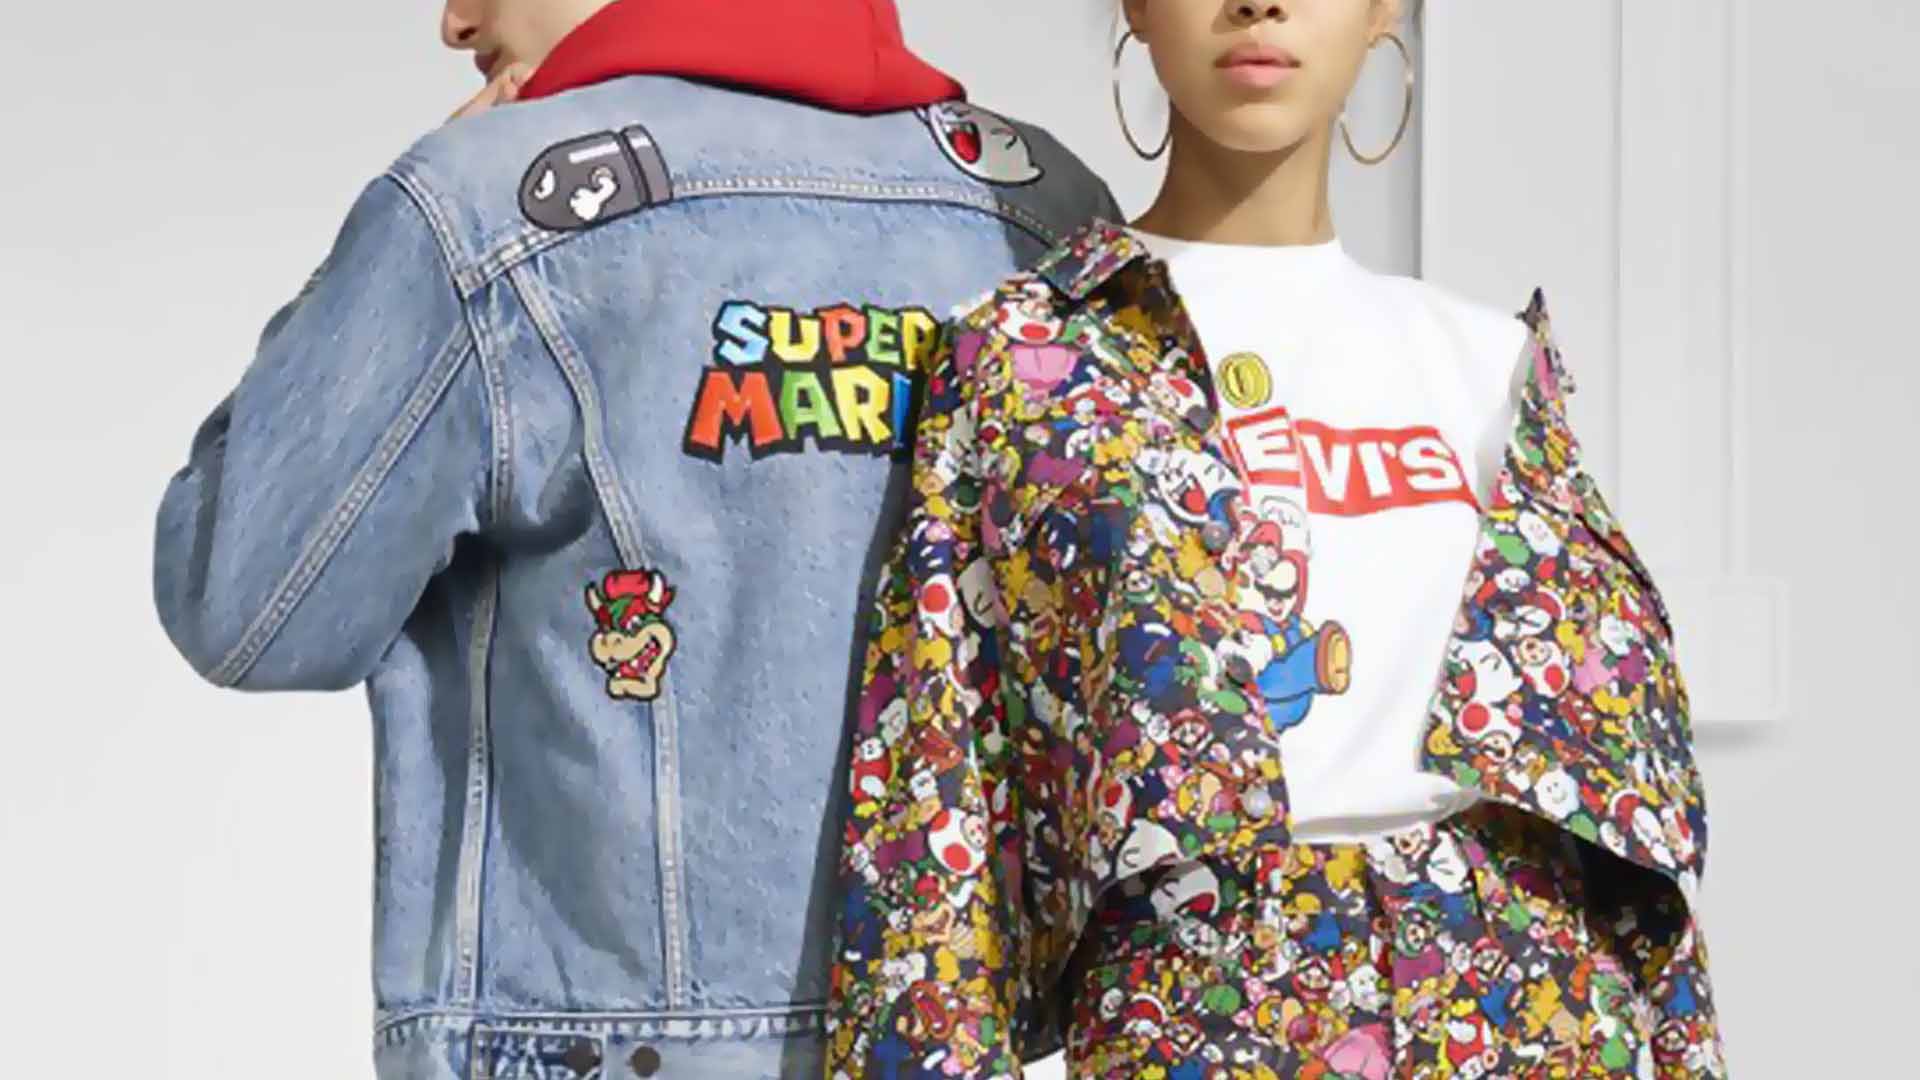 Super Mario Bros. Levi's clothing collection launches Thursday | GamesRadar+